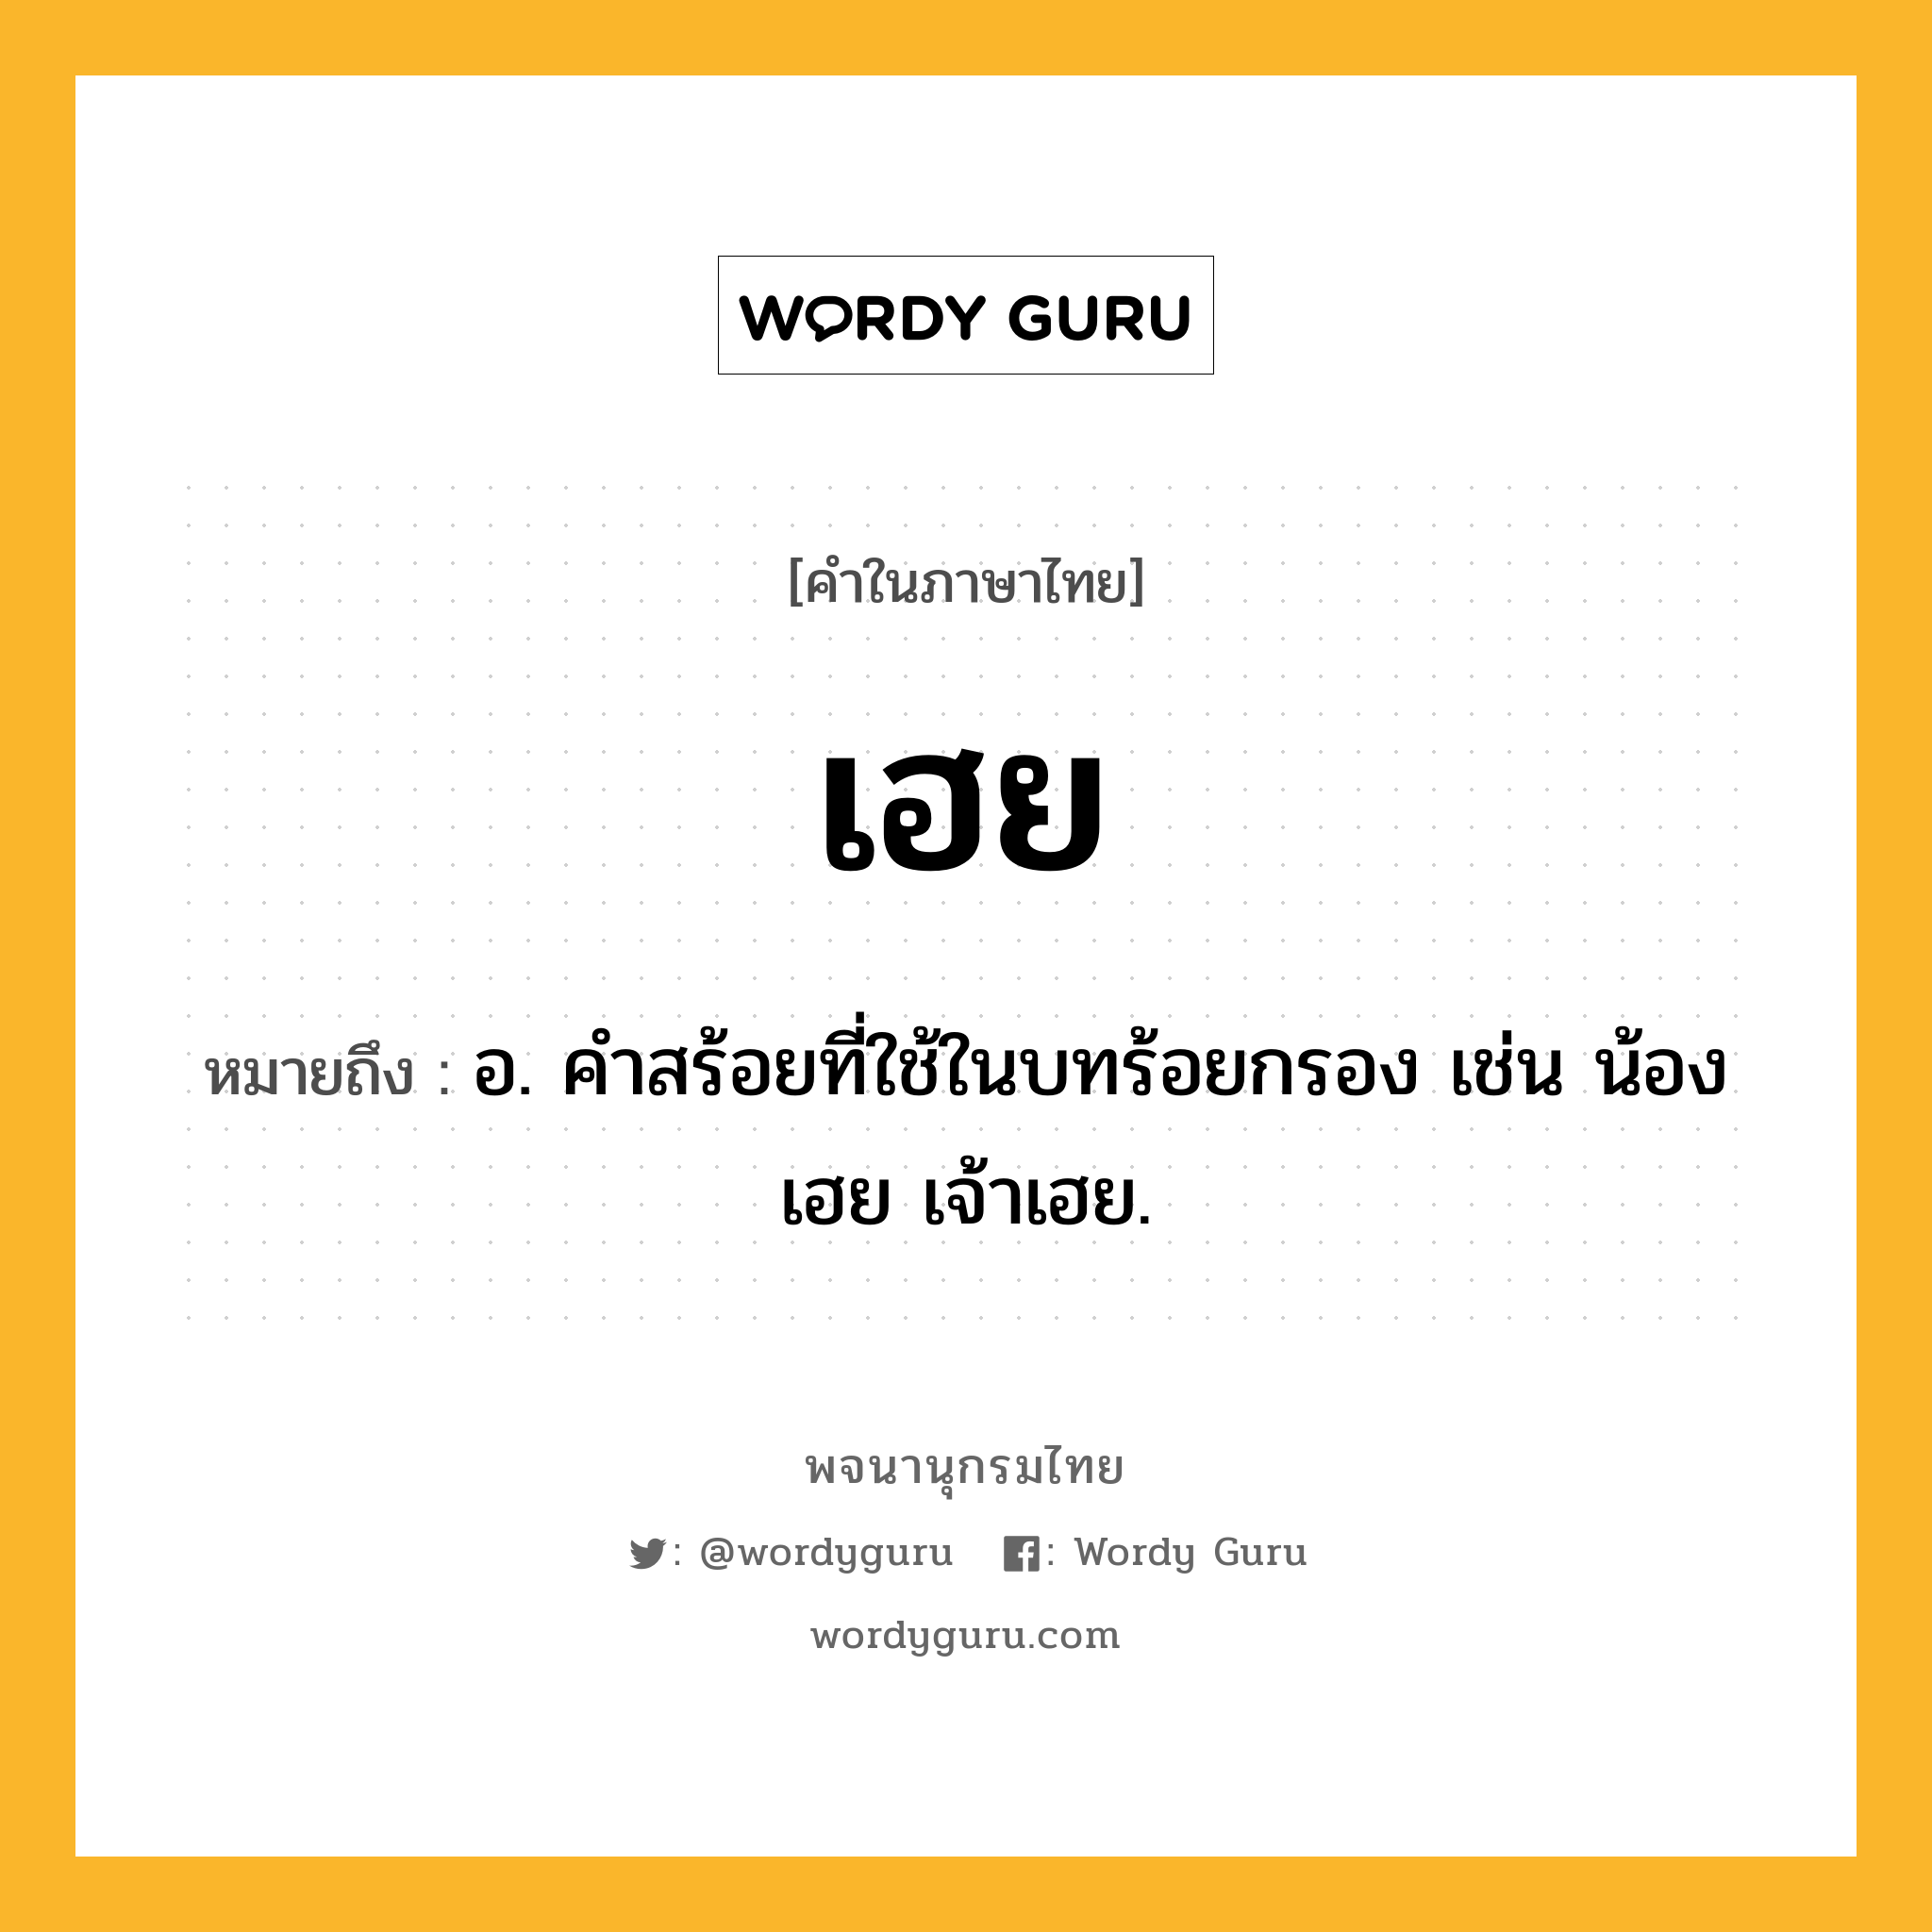 เฮย ความหมาย หมายถึงอะไร?, คำในภาษาไทย เฮย หมายถึง อ. คำสร้อยที่ใช้ในบทร้อยกรอง เช่น น้องเฮย เจ้าเฮย.